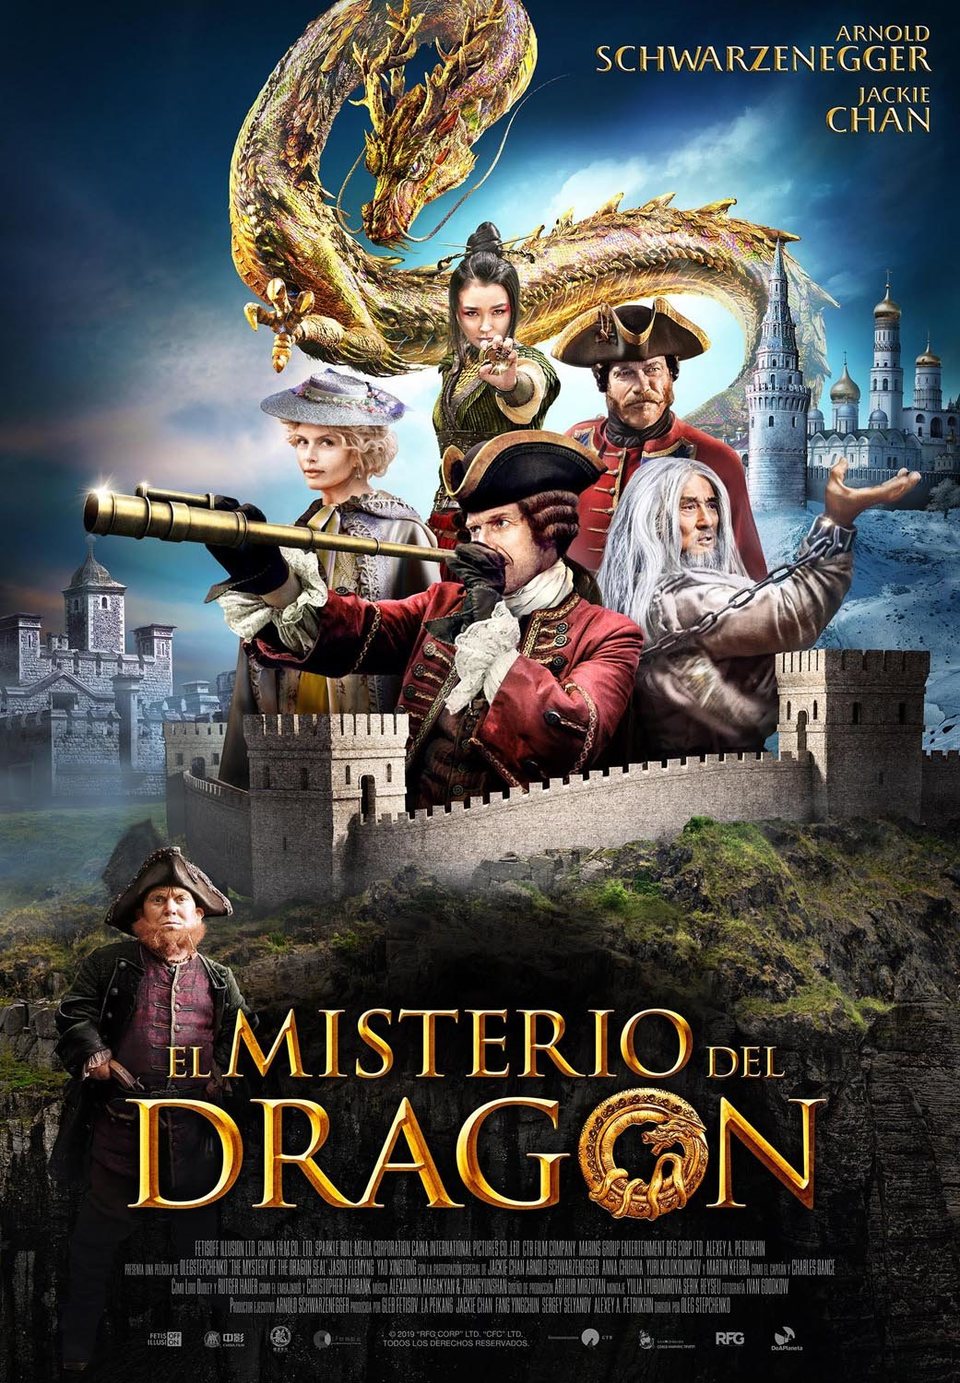 Cartel de El misterio del dragón - Póster español El misterio del dragón